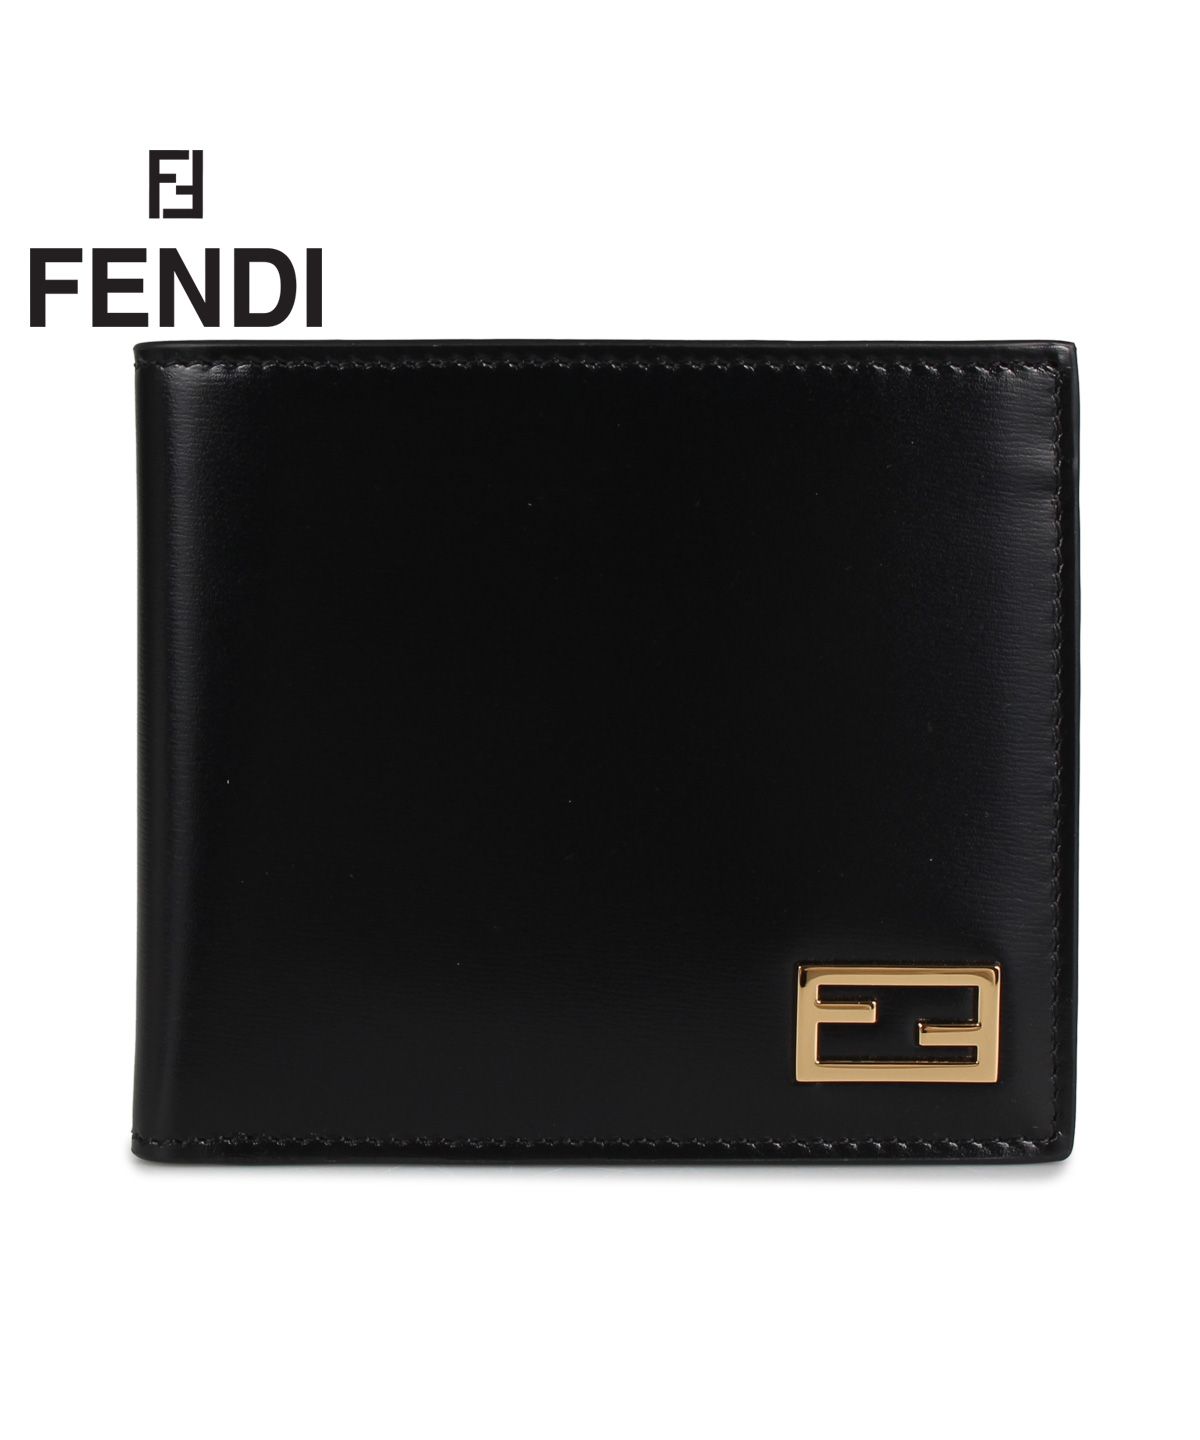 フェンディ FENDI 財布 二つ折り メンズ レディース イタリア製 WALLET ブラック 黒 7M0169AC91